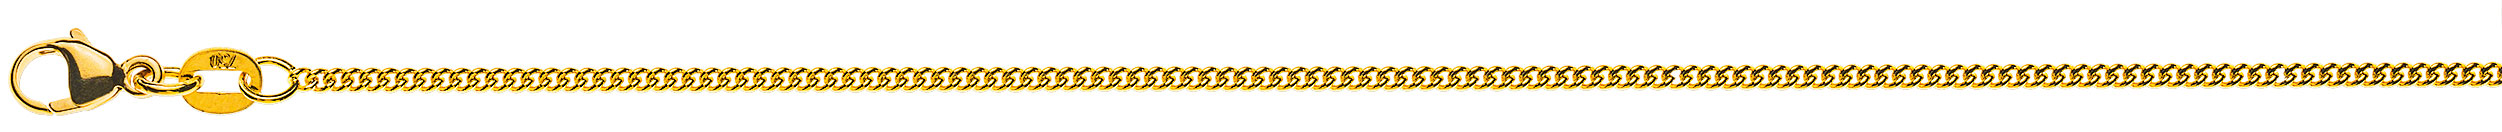 AURONOS Prestige Halskette Gelbgold 18K Rundpanzerkette 40cm 1.6mm